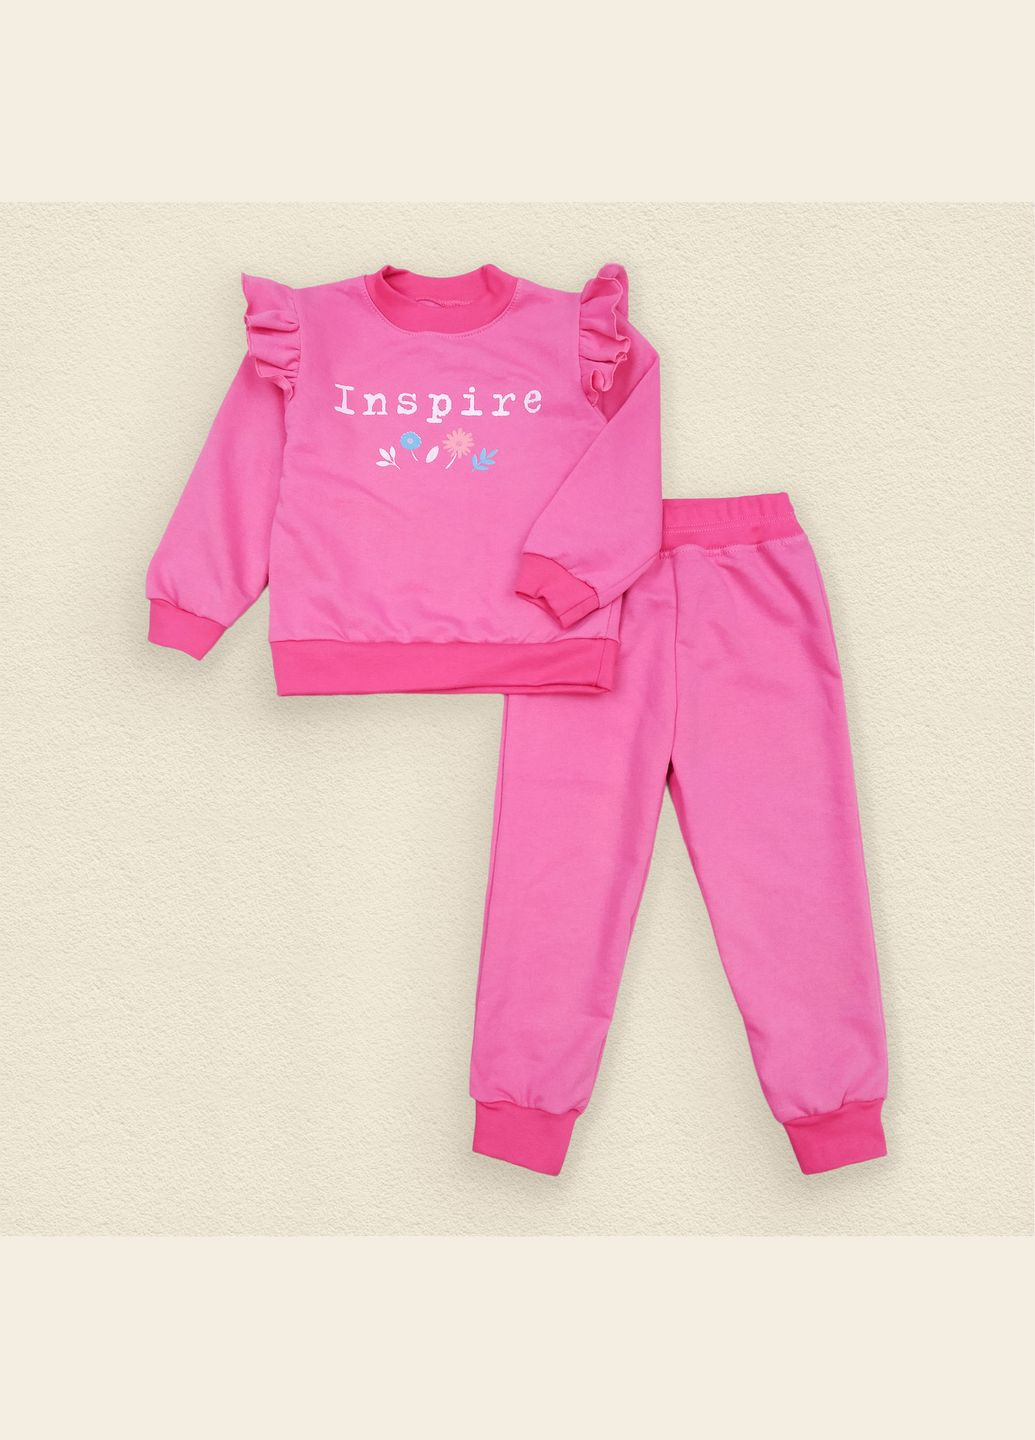 Рожевий демісезонний костюм дитячий з написом inspire кораловий dexter's